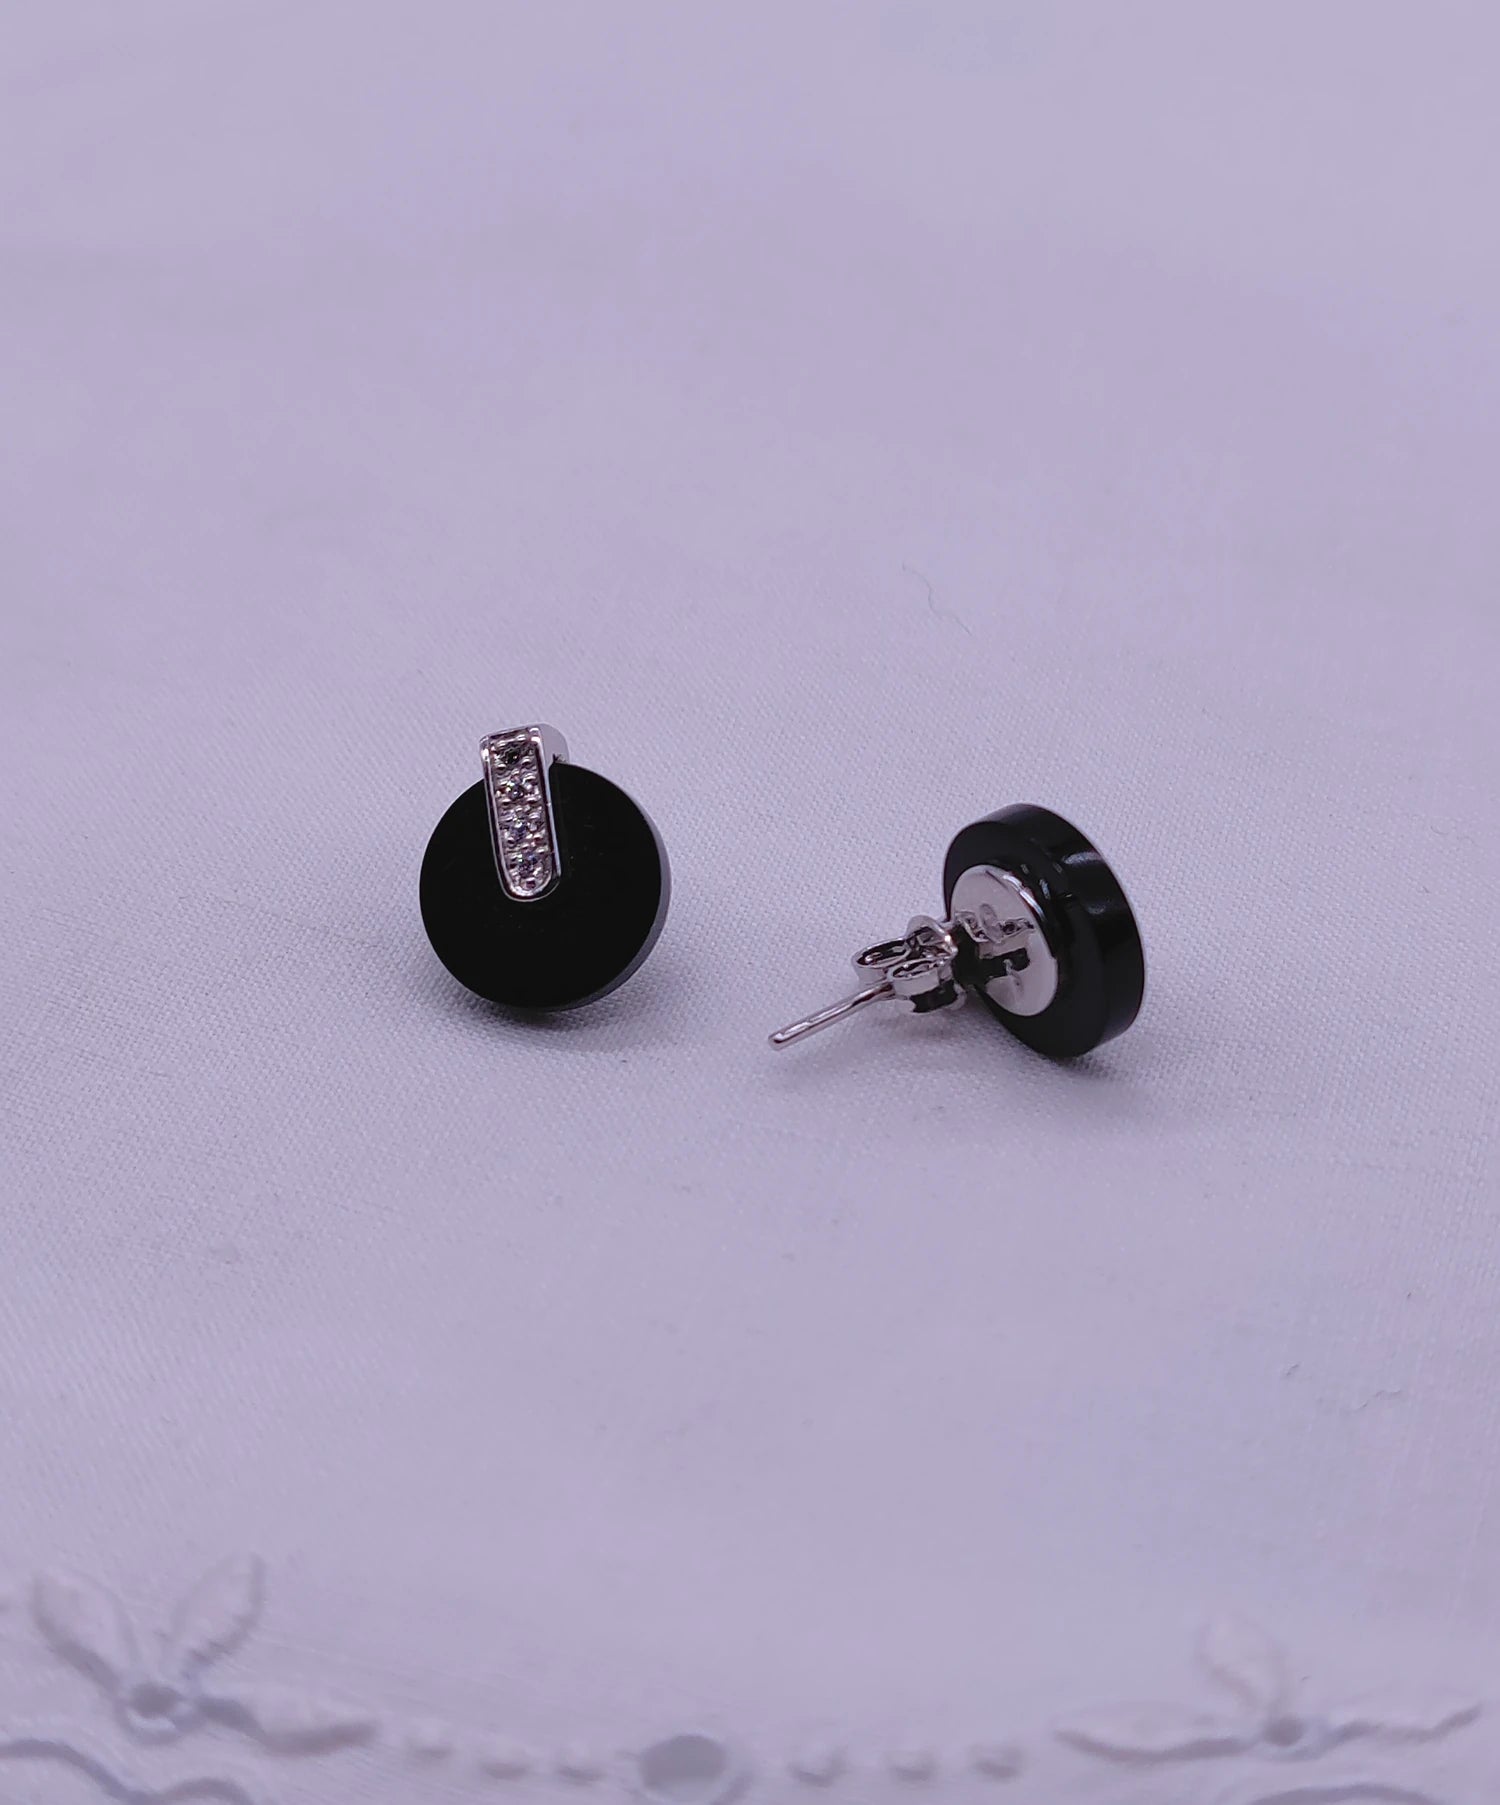 Boucles d'oreilles art déco Moon onyx et zirconium